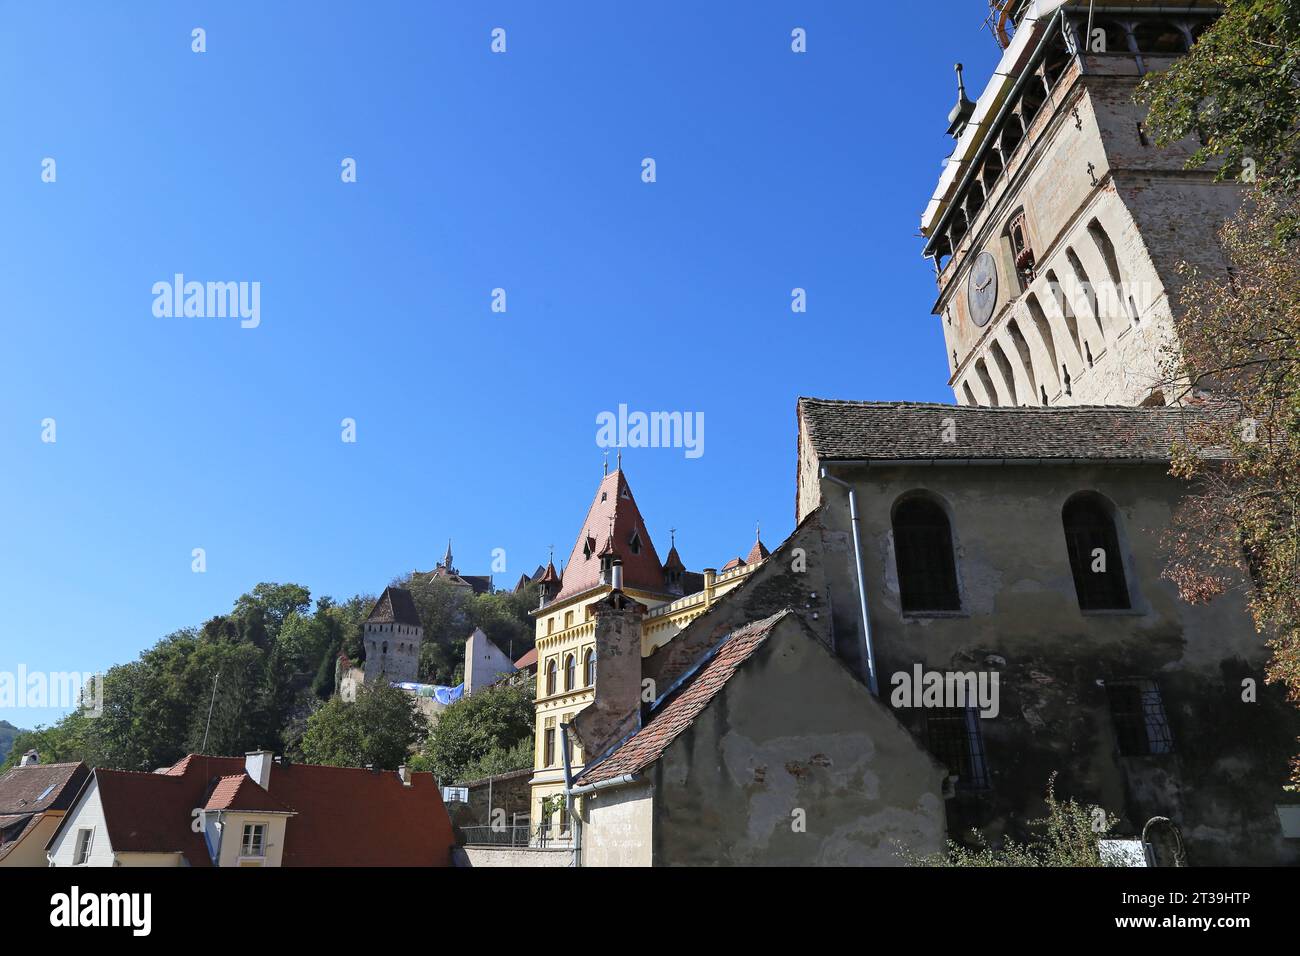 Turnul cu Ceas (Clock Tower), Piața Muzeului, Sighişoara, UNESCO World Heritage Site, Mureş County, Transylvania, Romania, Europe Stock Photo